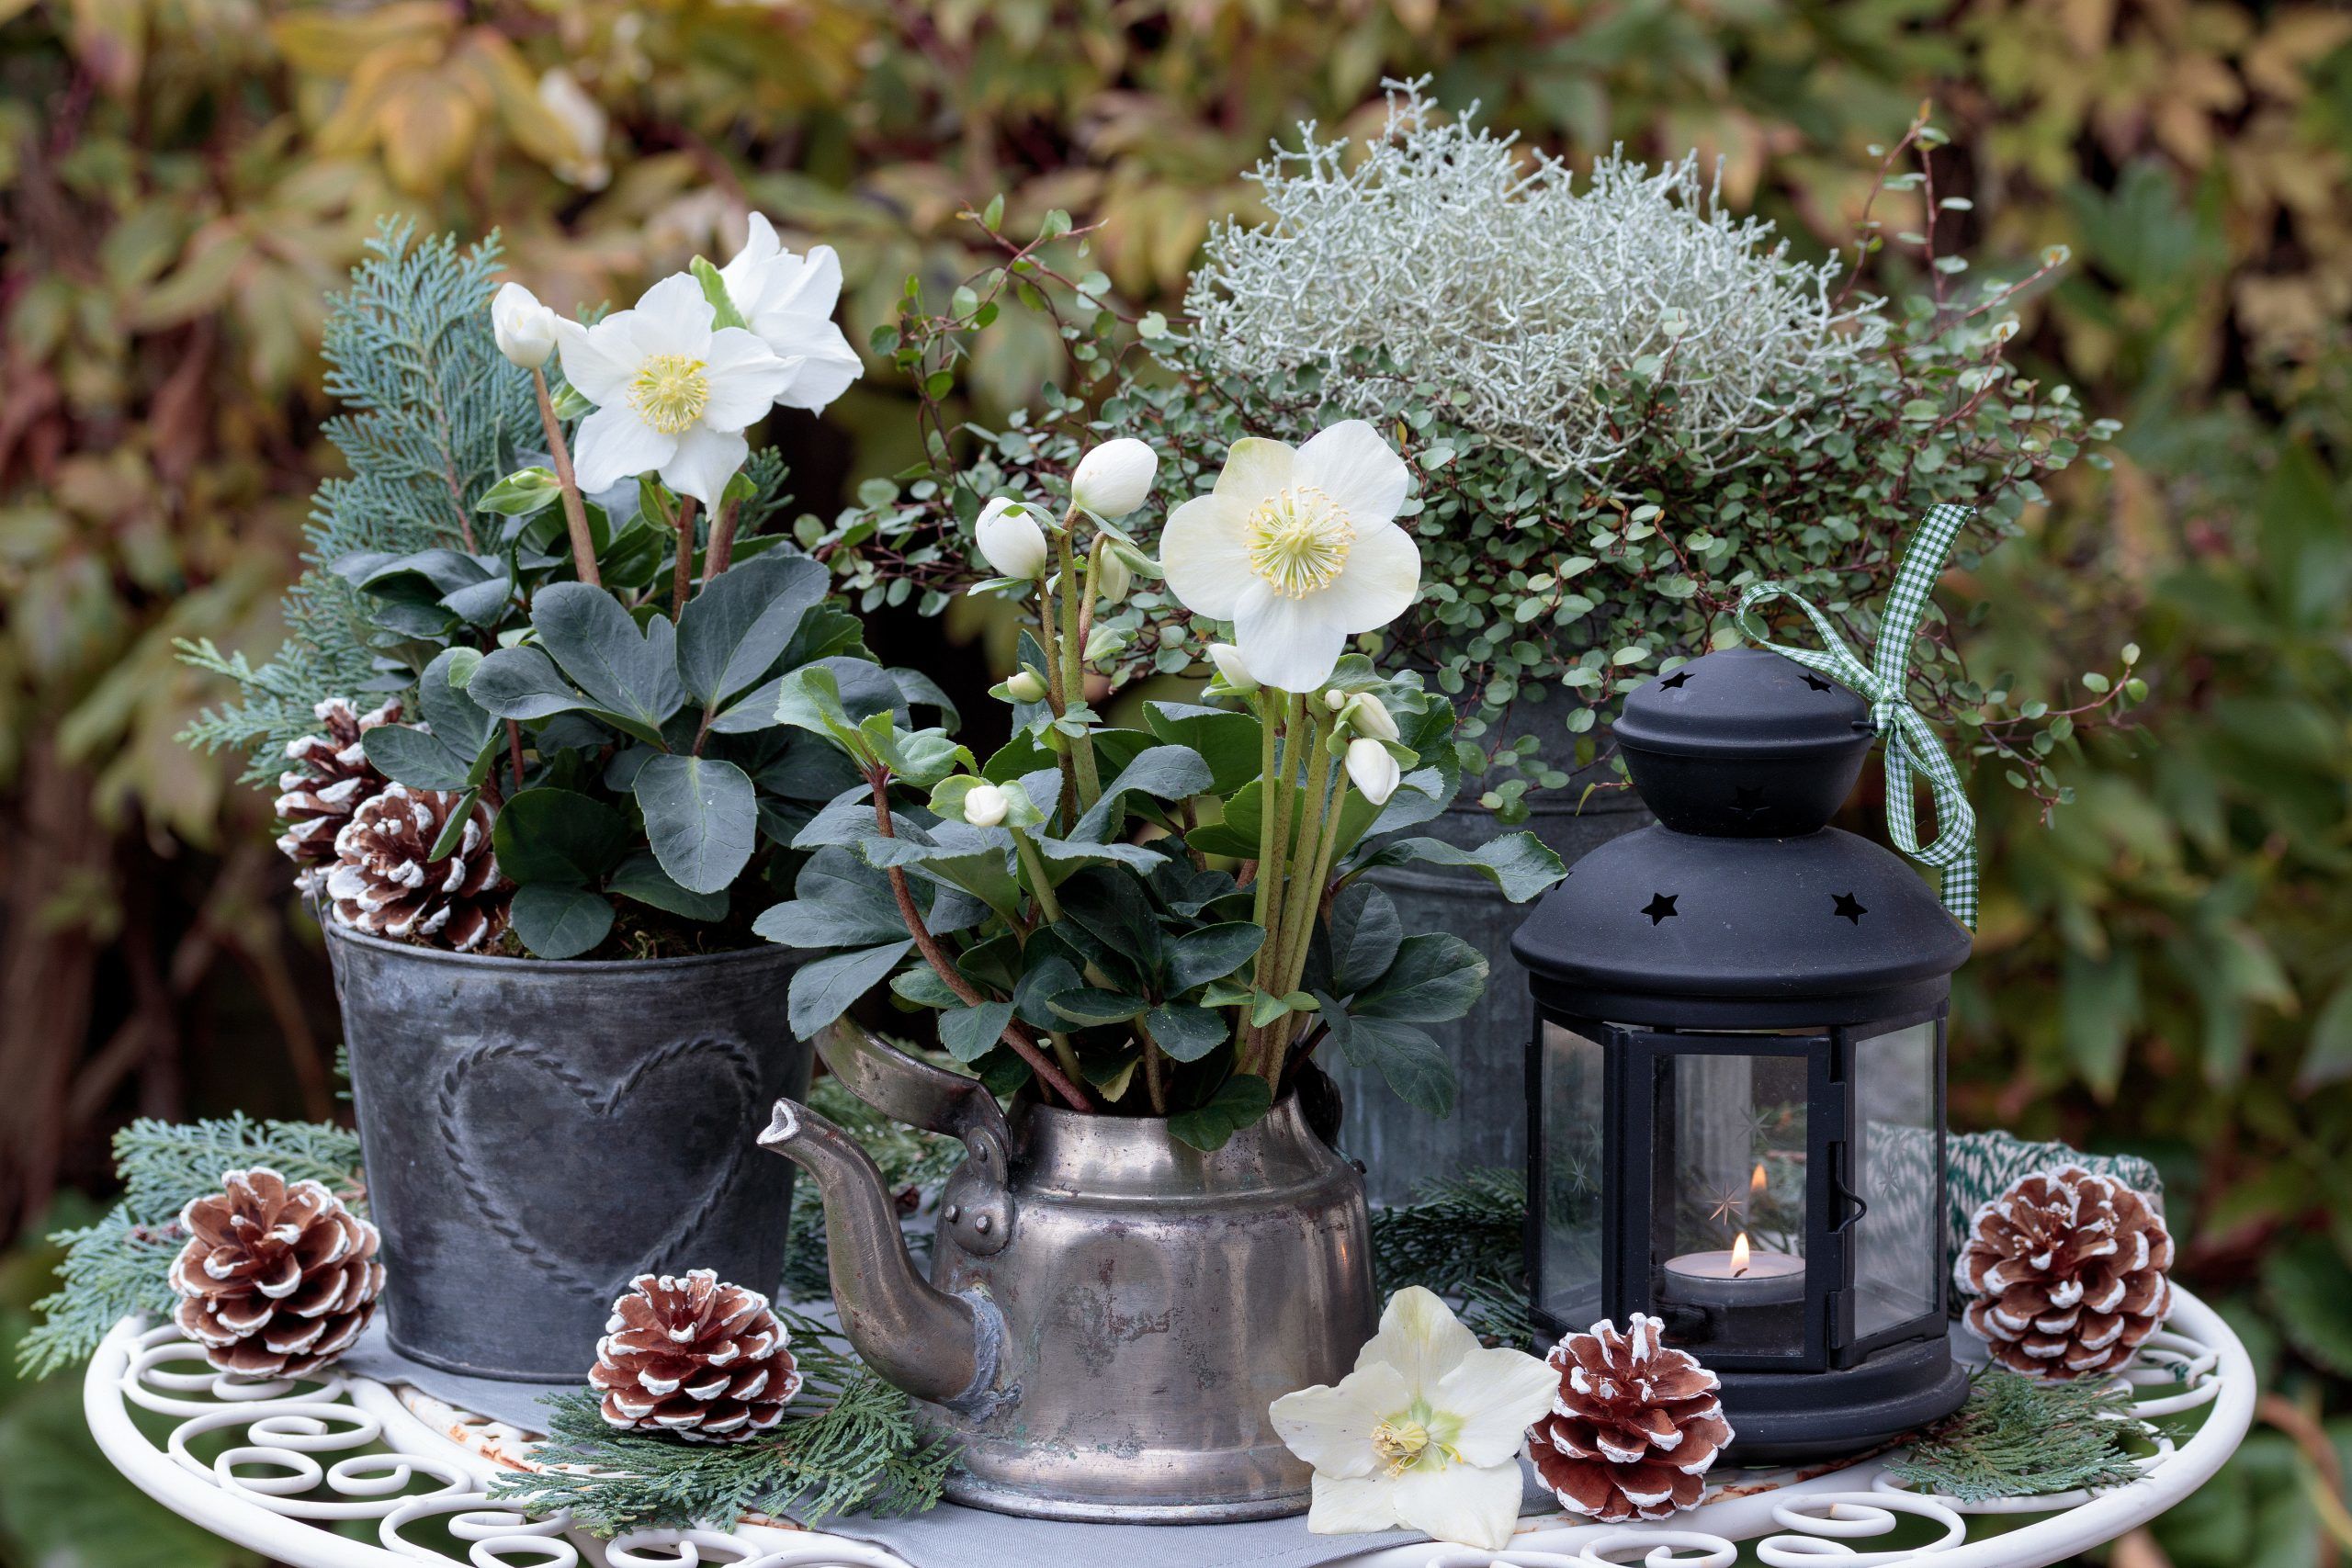 Christrosen und Silberdrahtpflanze in vintage Töpfen als Gartendekoration